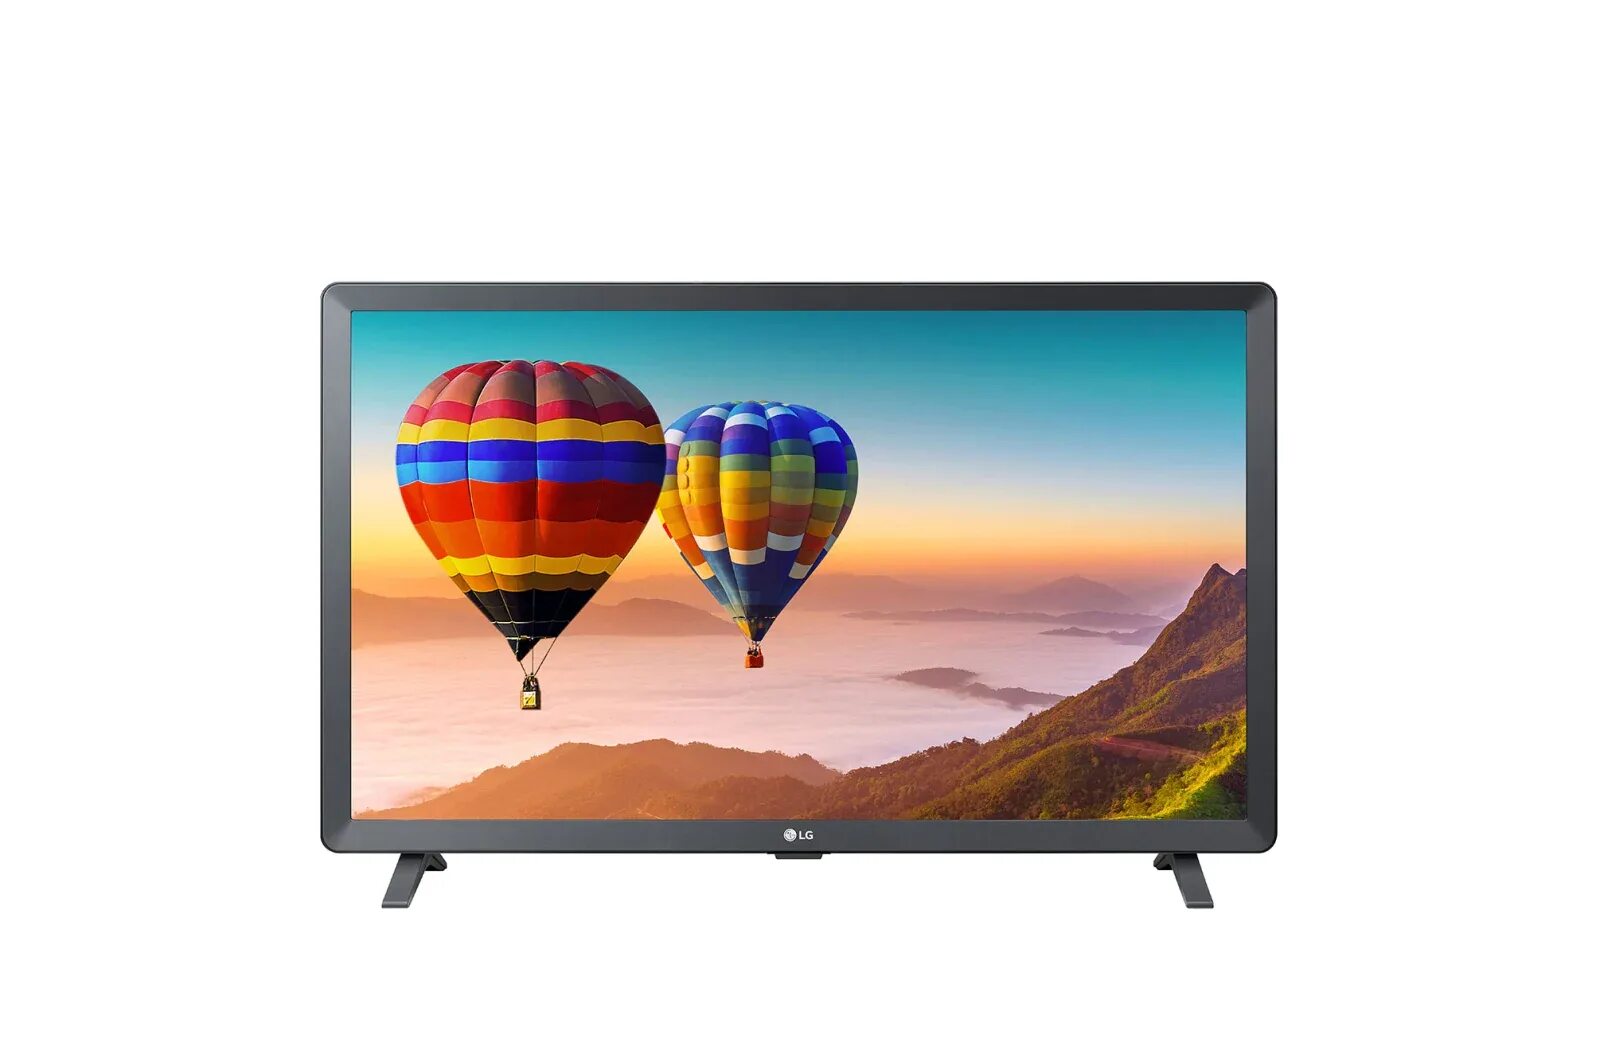 Телевизор LG 28tn525s-PZ. Телевизор LG 28ln515s-PZ белый. Телевизор 28" LG 28tn525s-PZ. Led телевизор LG 28tn515s-PZ. Телевизоры диагональ 28 дюймов